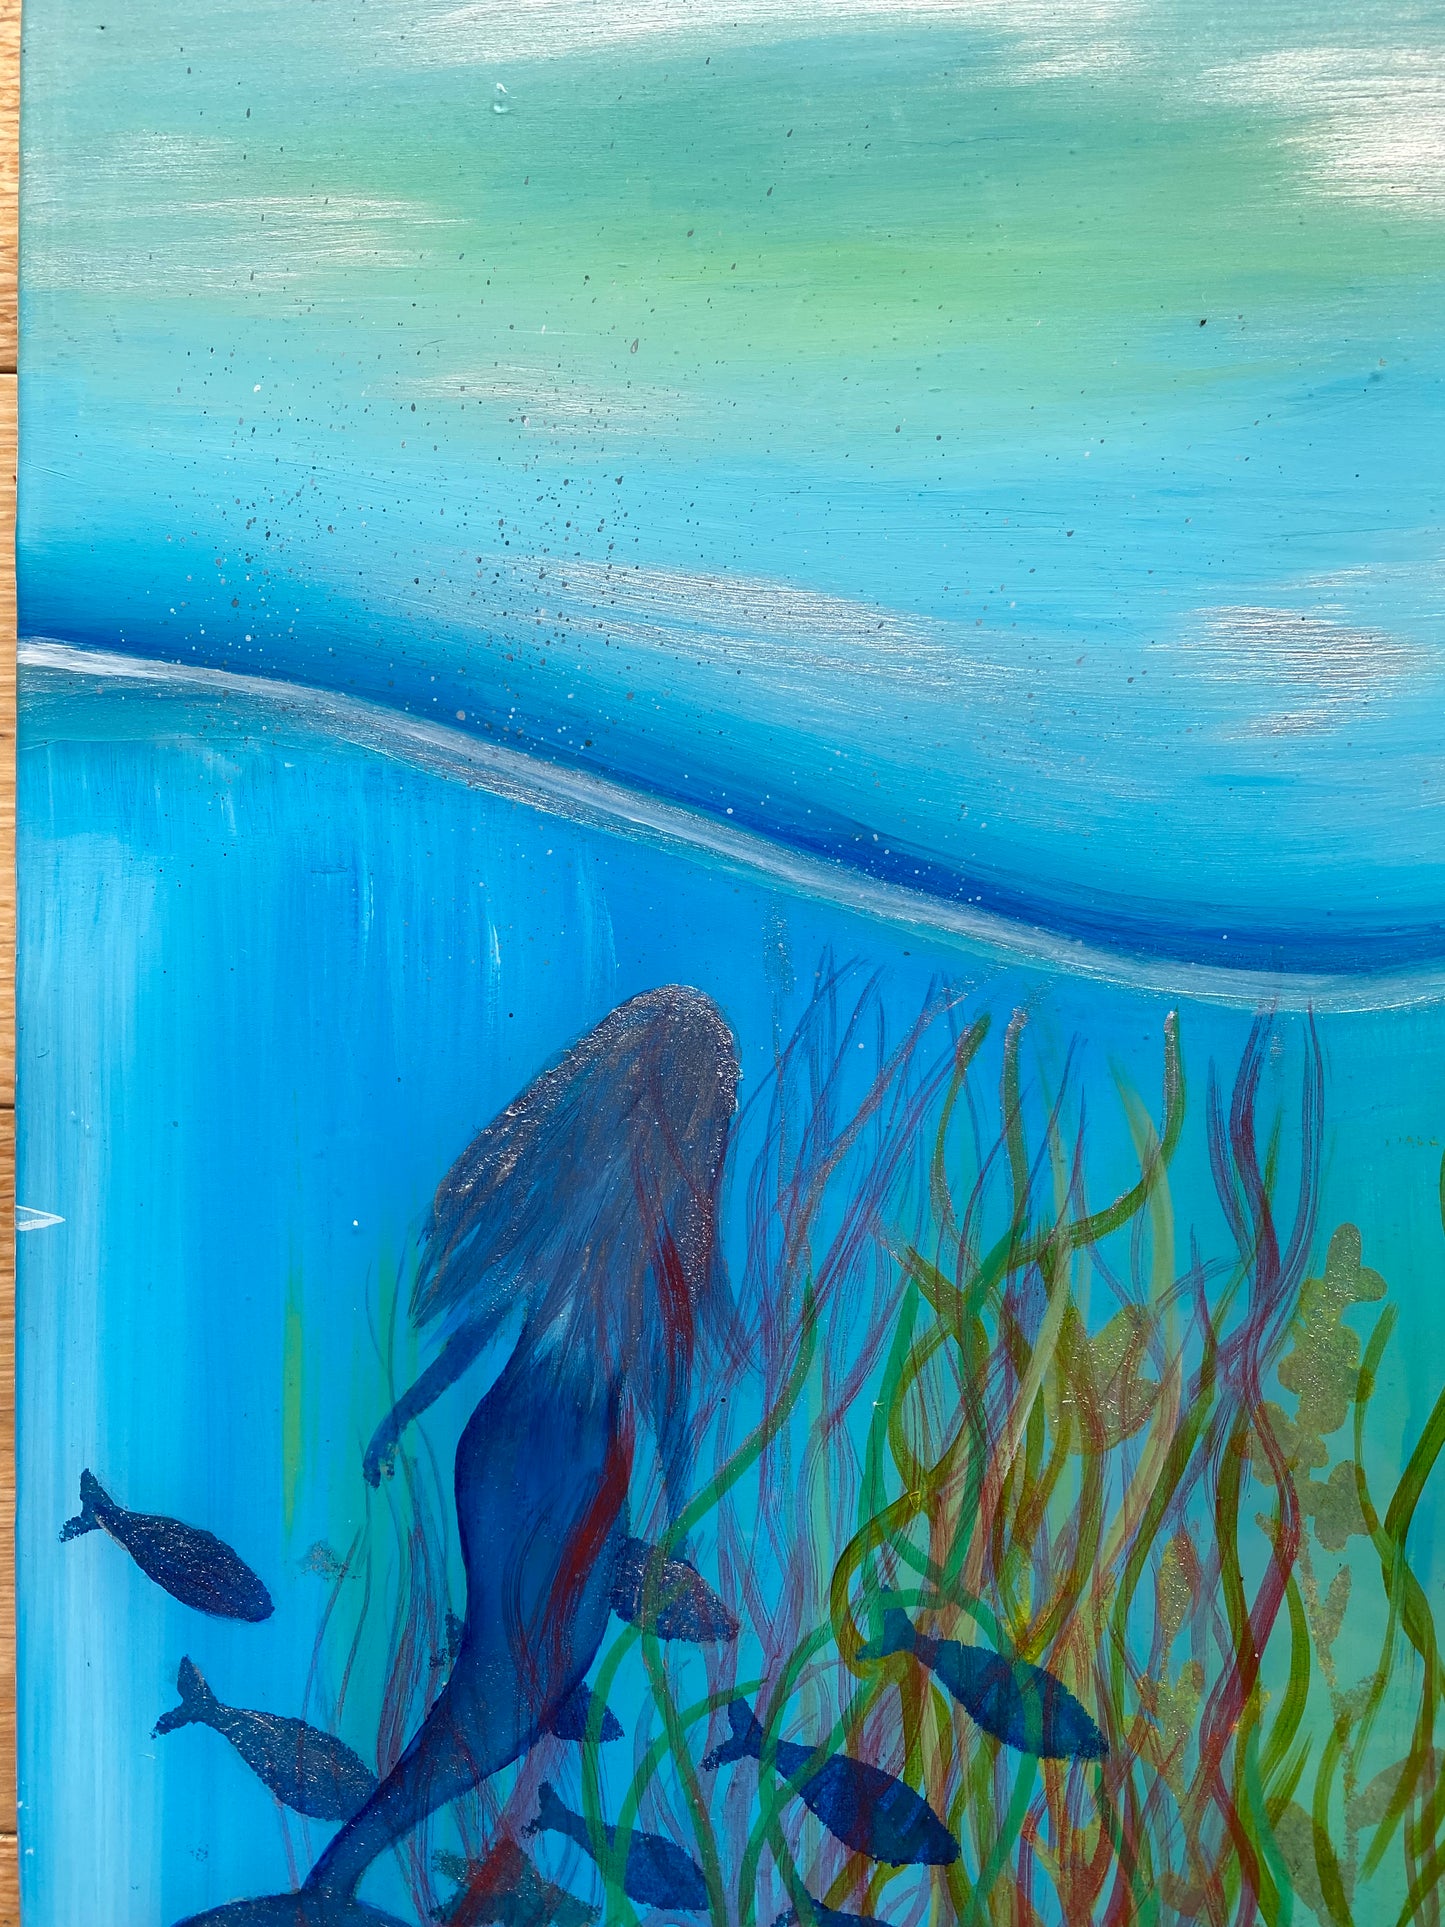 Mermaid painting, Jessica.